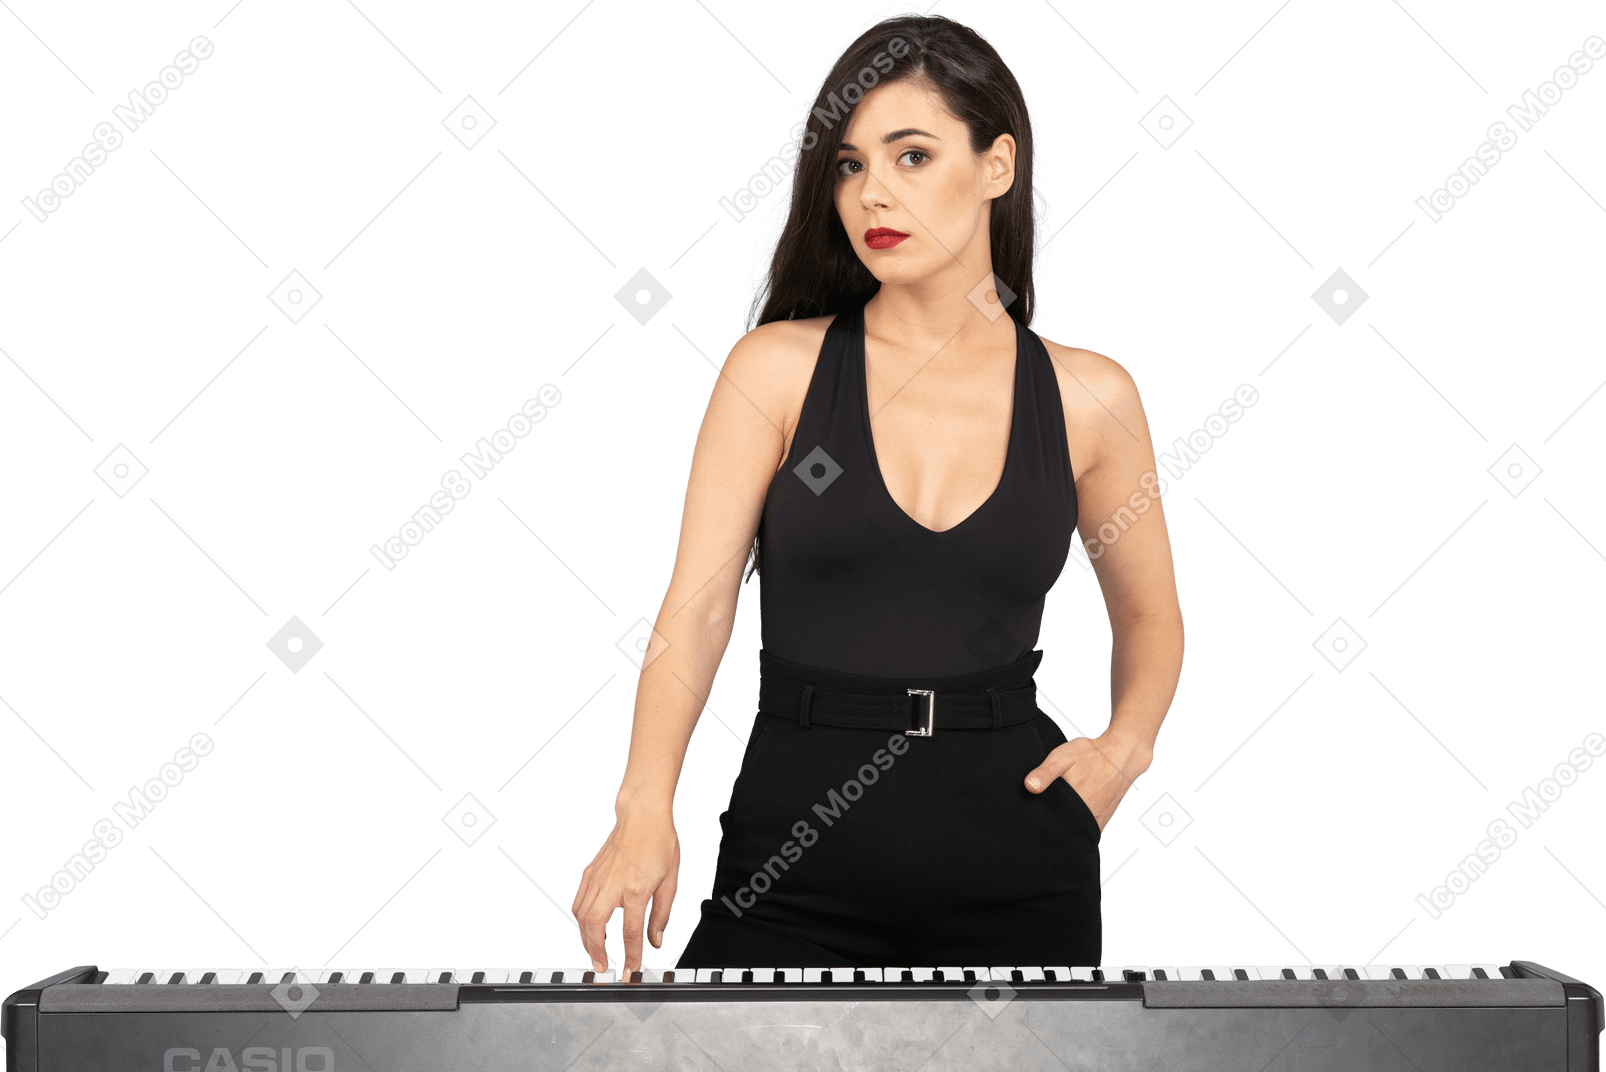 Vue de face d'une jeune femme en robe noire en appuyant sur la touche d'un piano